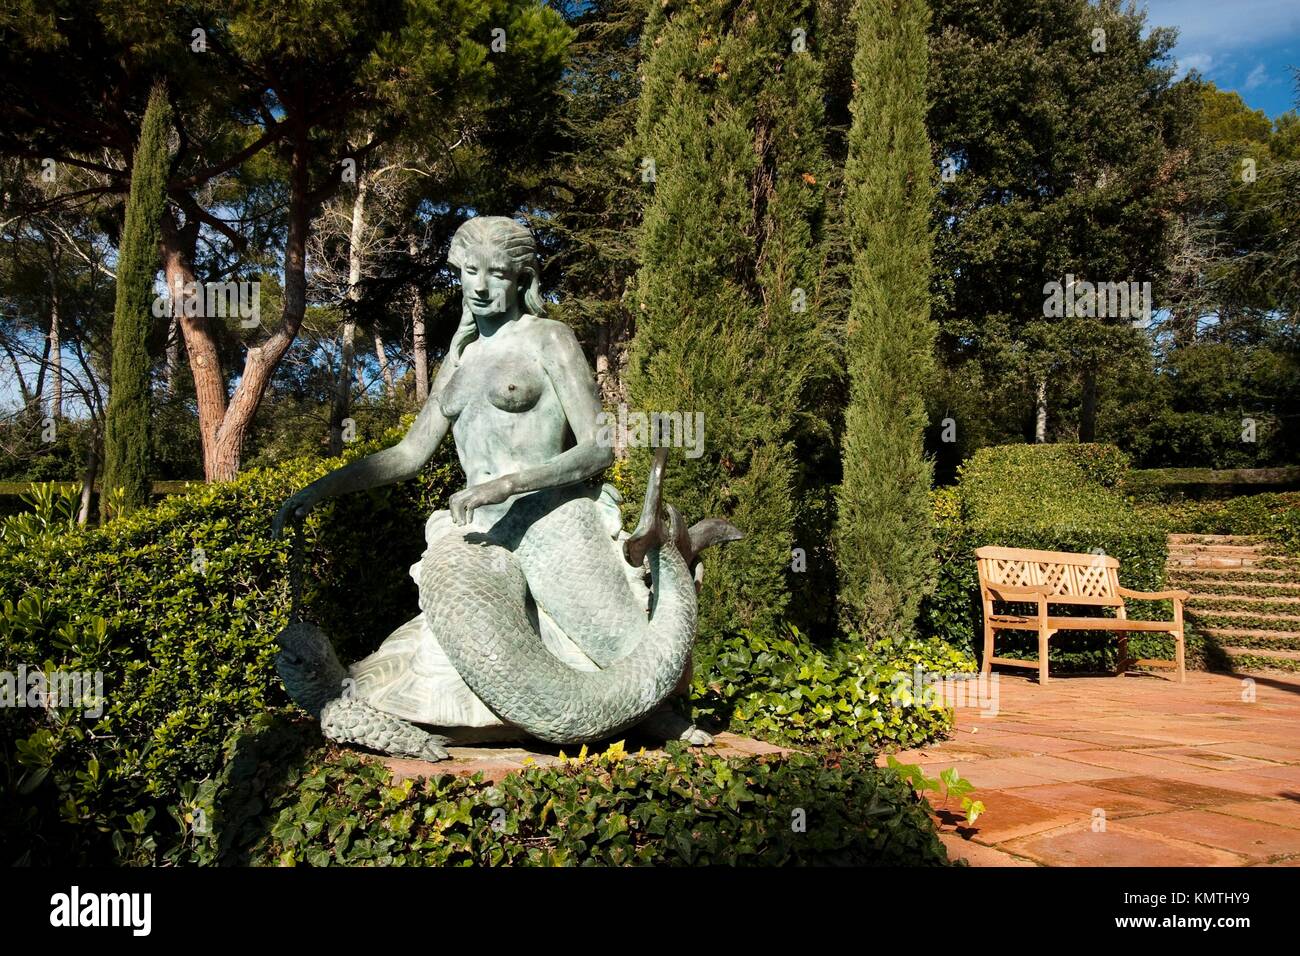 Les Sirenes Bornze Escultures De Obra De Maria Llimona I Benet 1894 1985 Situades Ein Lescala De 3985